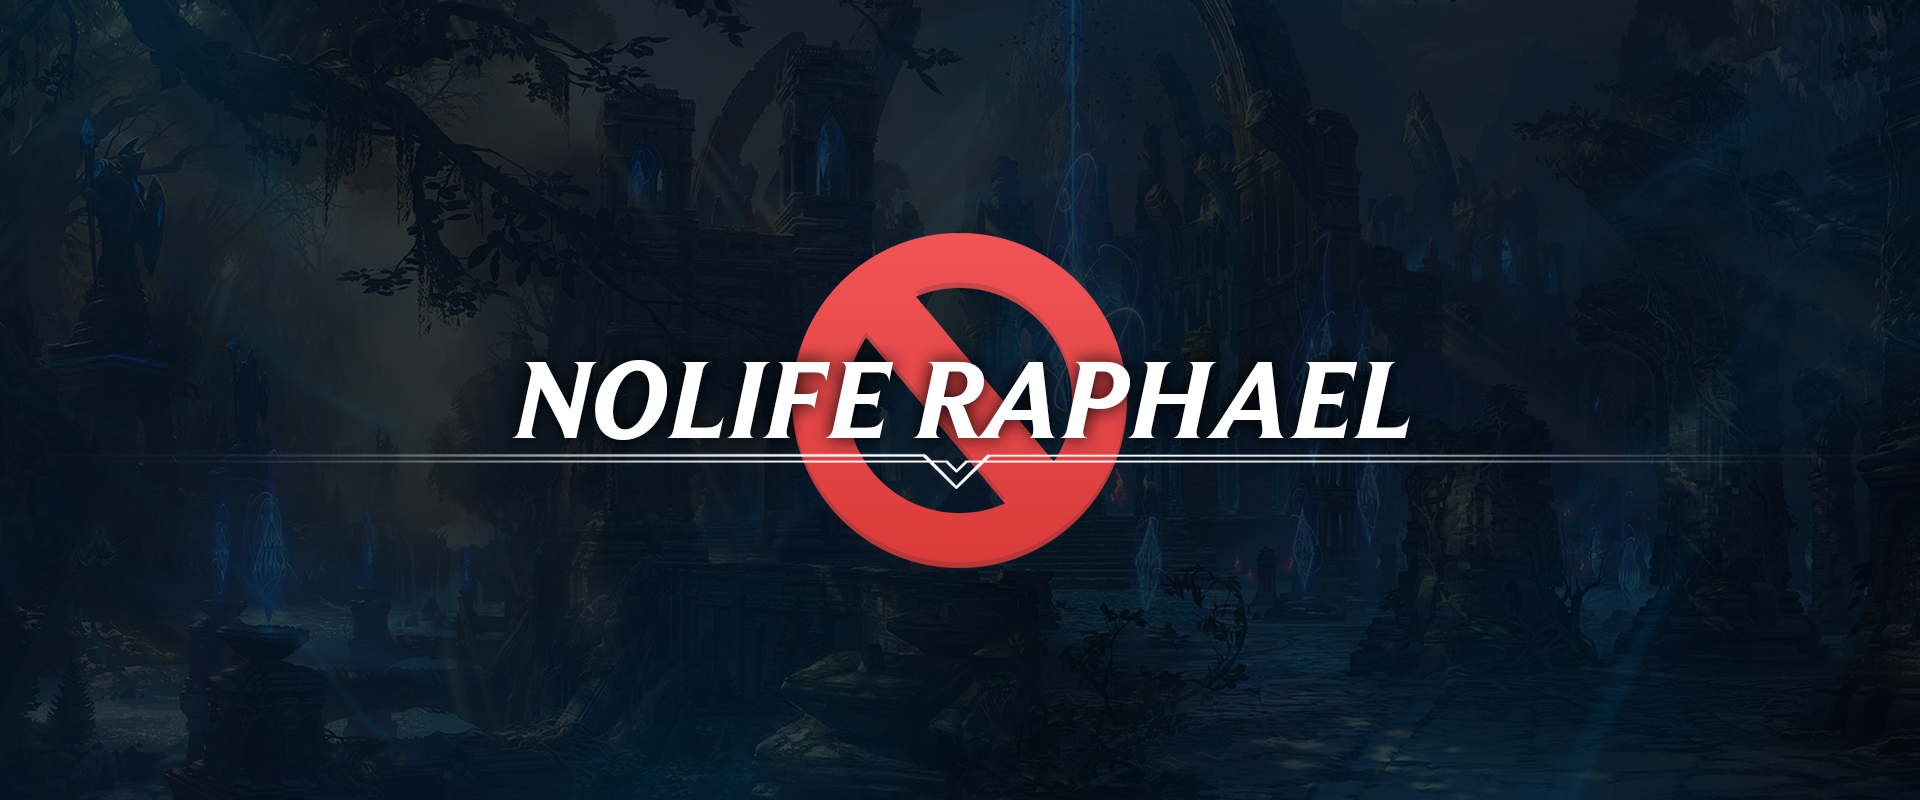 Nolife Raphael visszakapta az életét: feloldották a tiltását, mehet tovább a szintfarm!